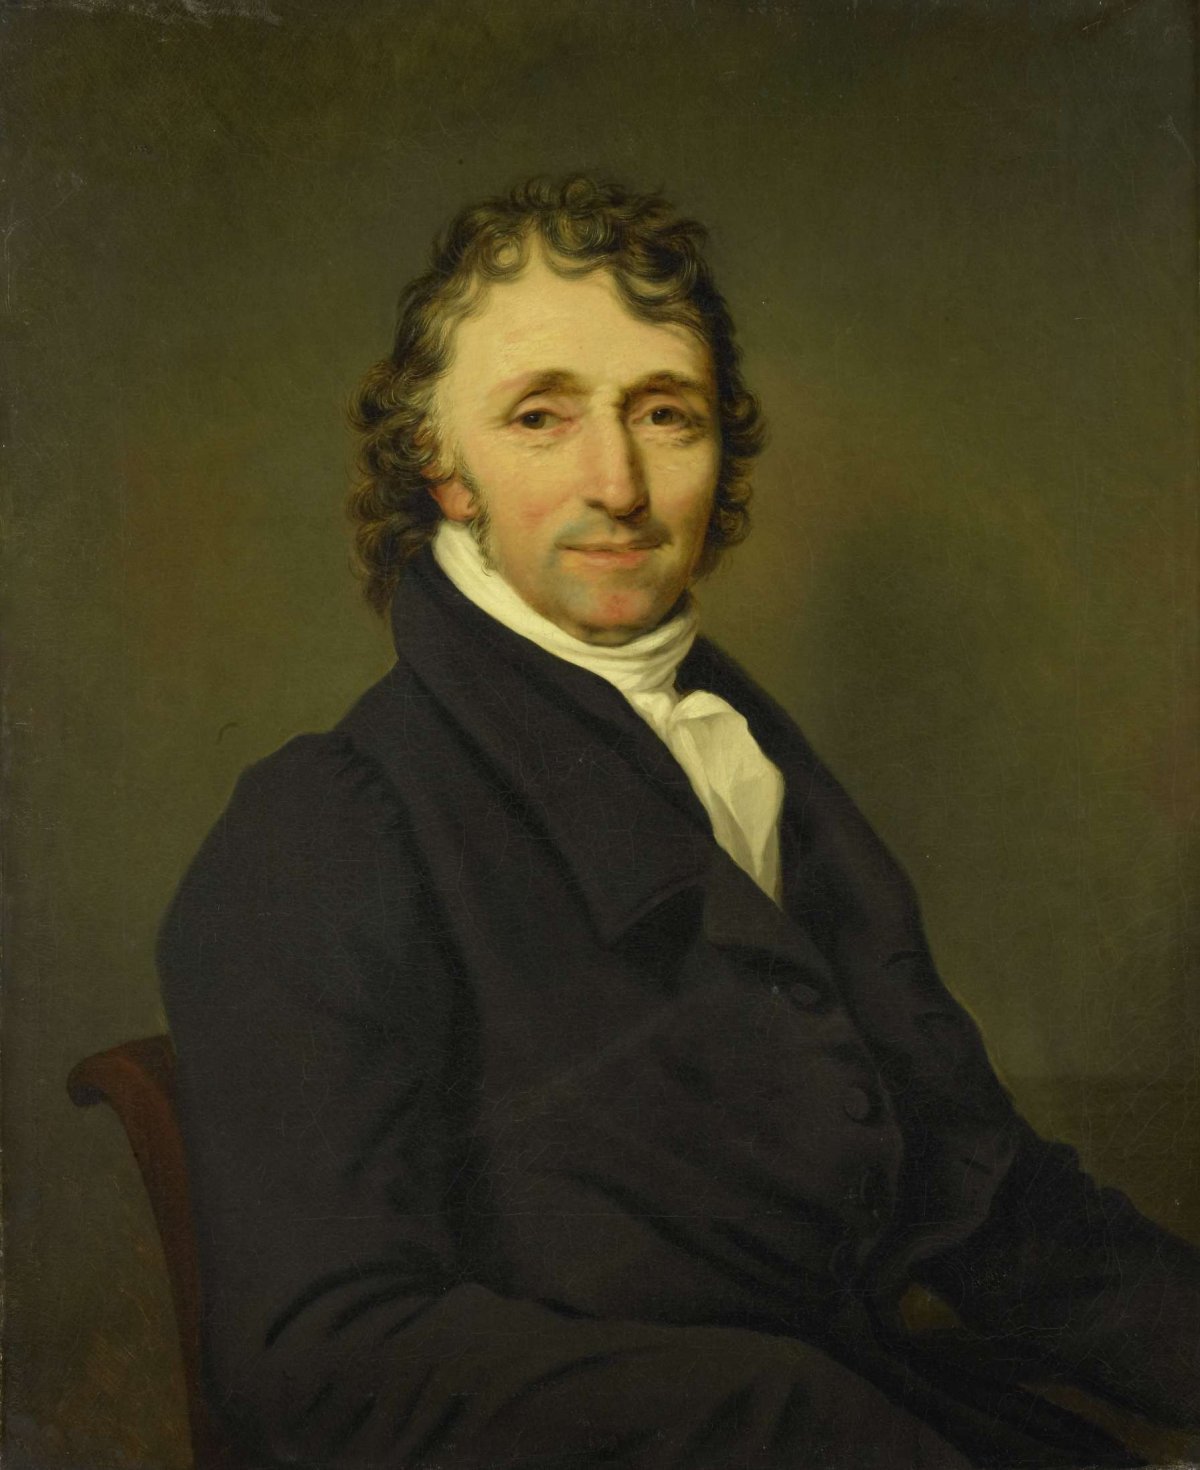 Portrait of Clemens van Demmeltraadt (1773-1841), Louis Moritz, c. 1820 - c. 1841